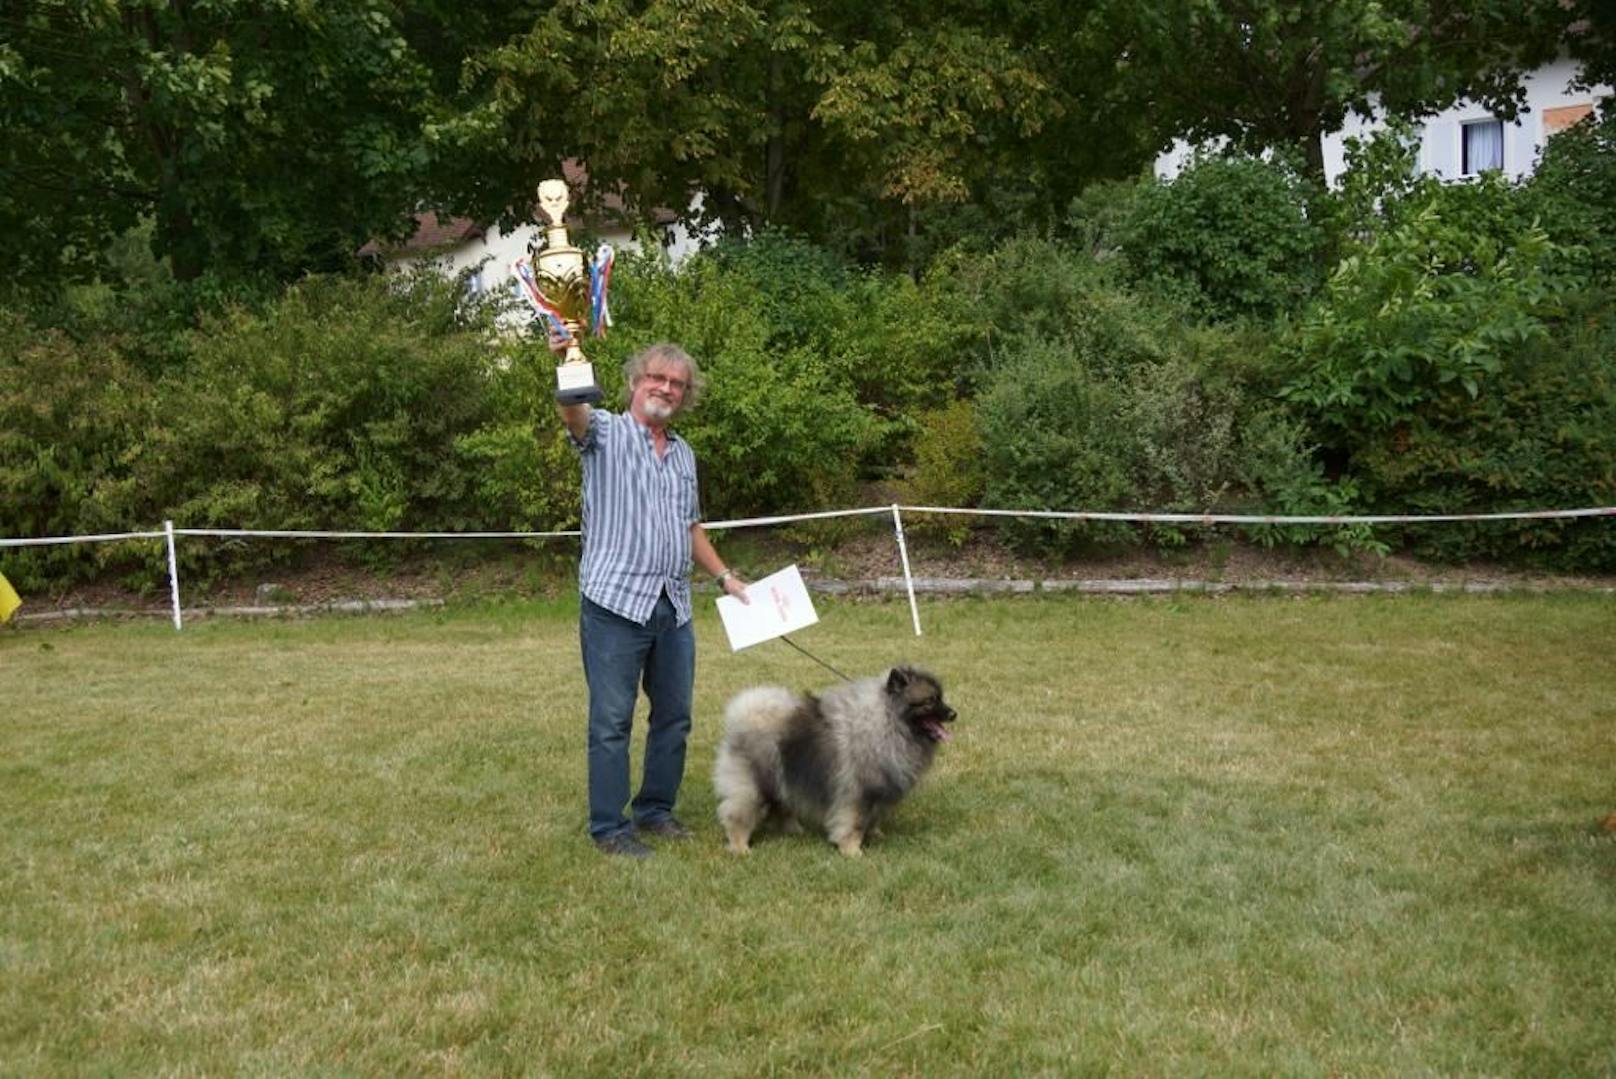 Melker gewinnt internationale Show mit Hund "Yanjan"